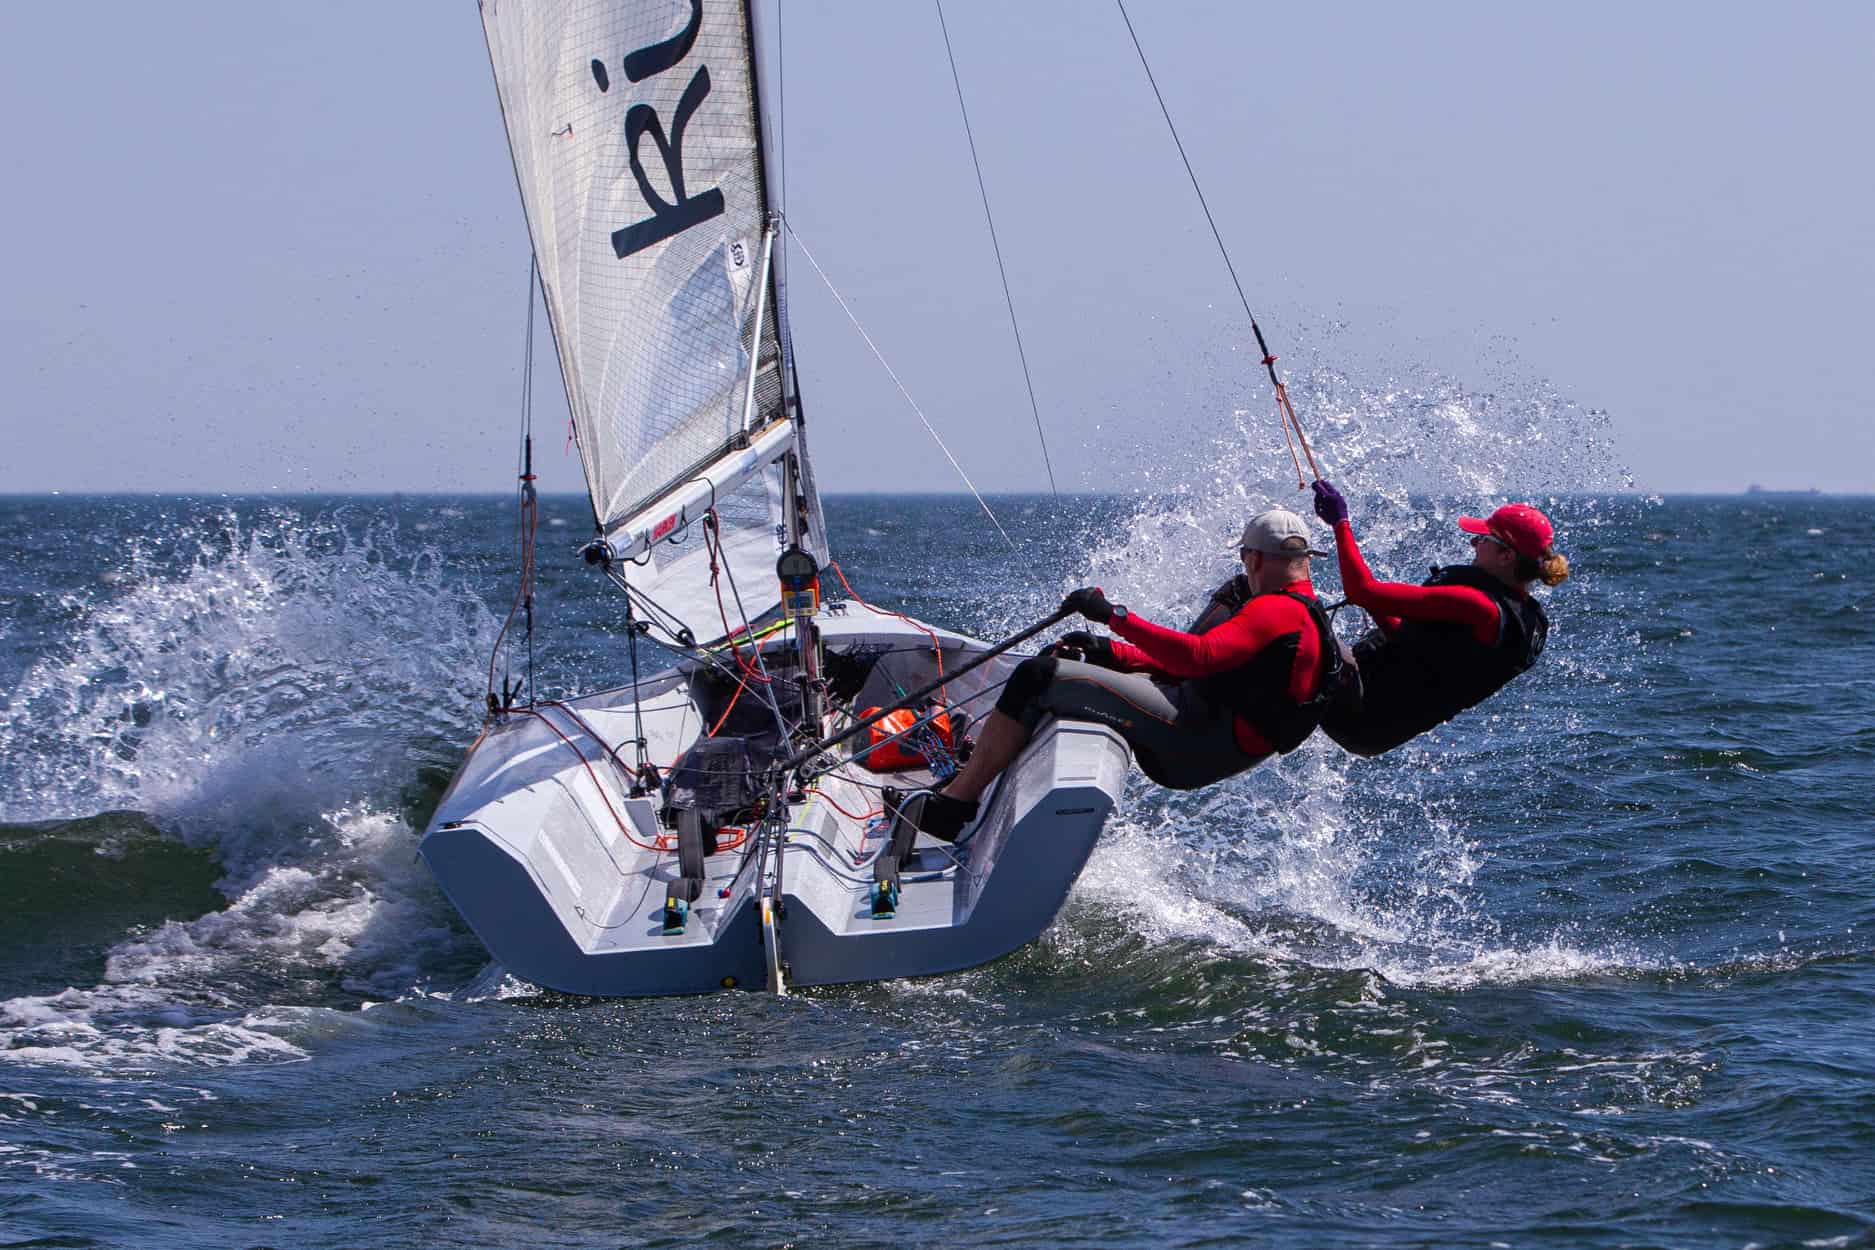 Regaty Gdynia Sailing Days 2022 dla klasy Nautica 450